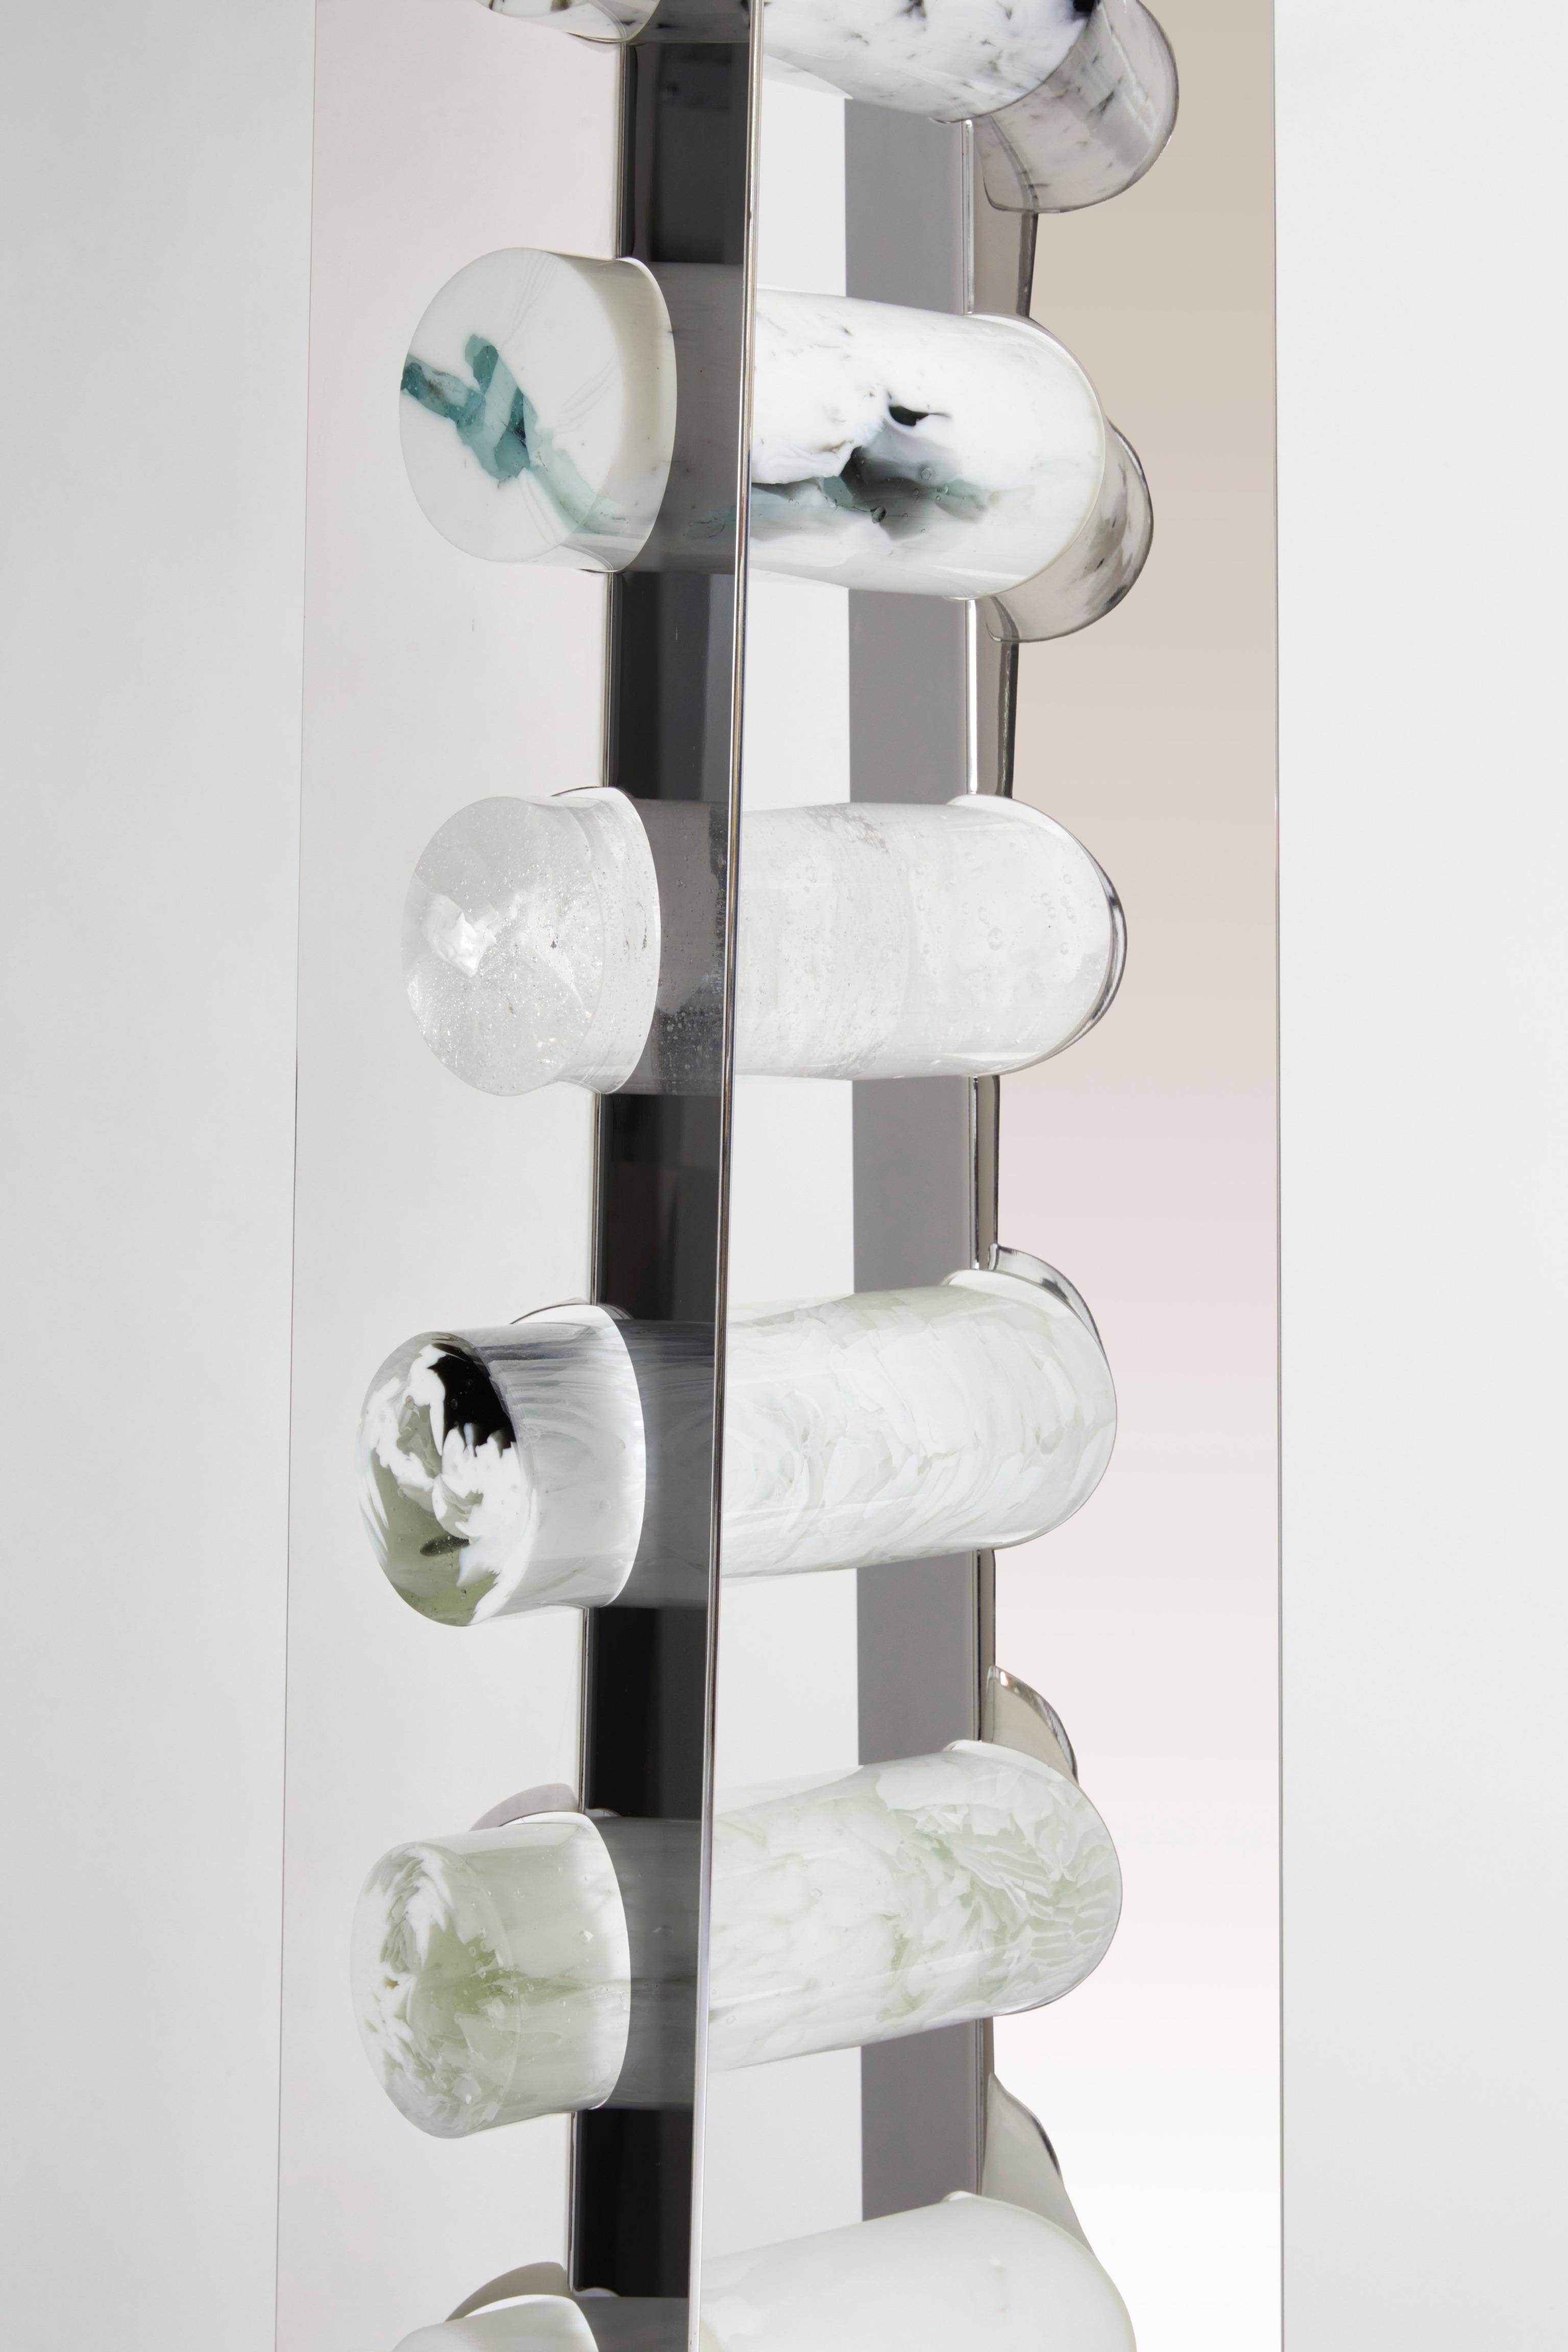 5°11 von Perrin & Perrin, Galerie Negropontes in Paris, Frankreich. Skulpturale Glasinstallation - Einzigartig

Martine und Jacki Perrin bilden zusammen ein Duo, das durch ihre Individualität bereichert wird. Seit über einem Jahrzehnt erforschen sie